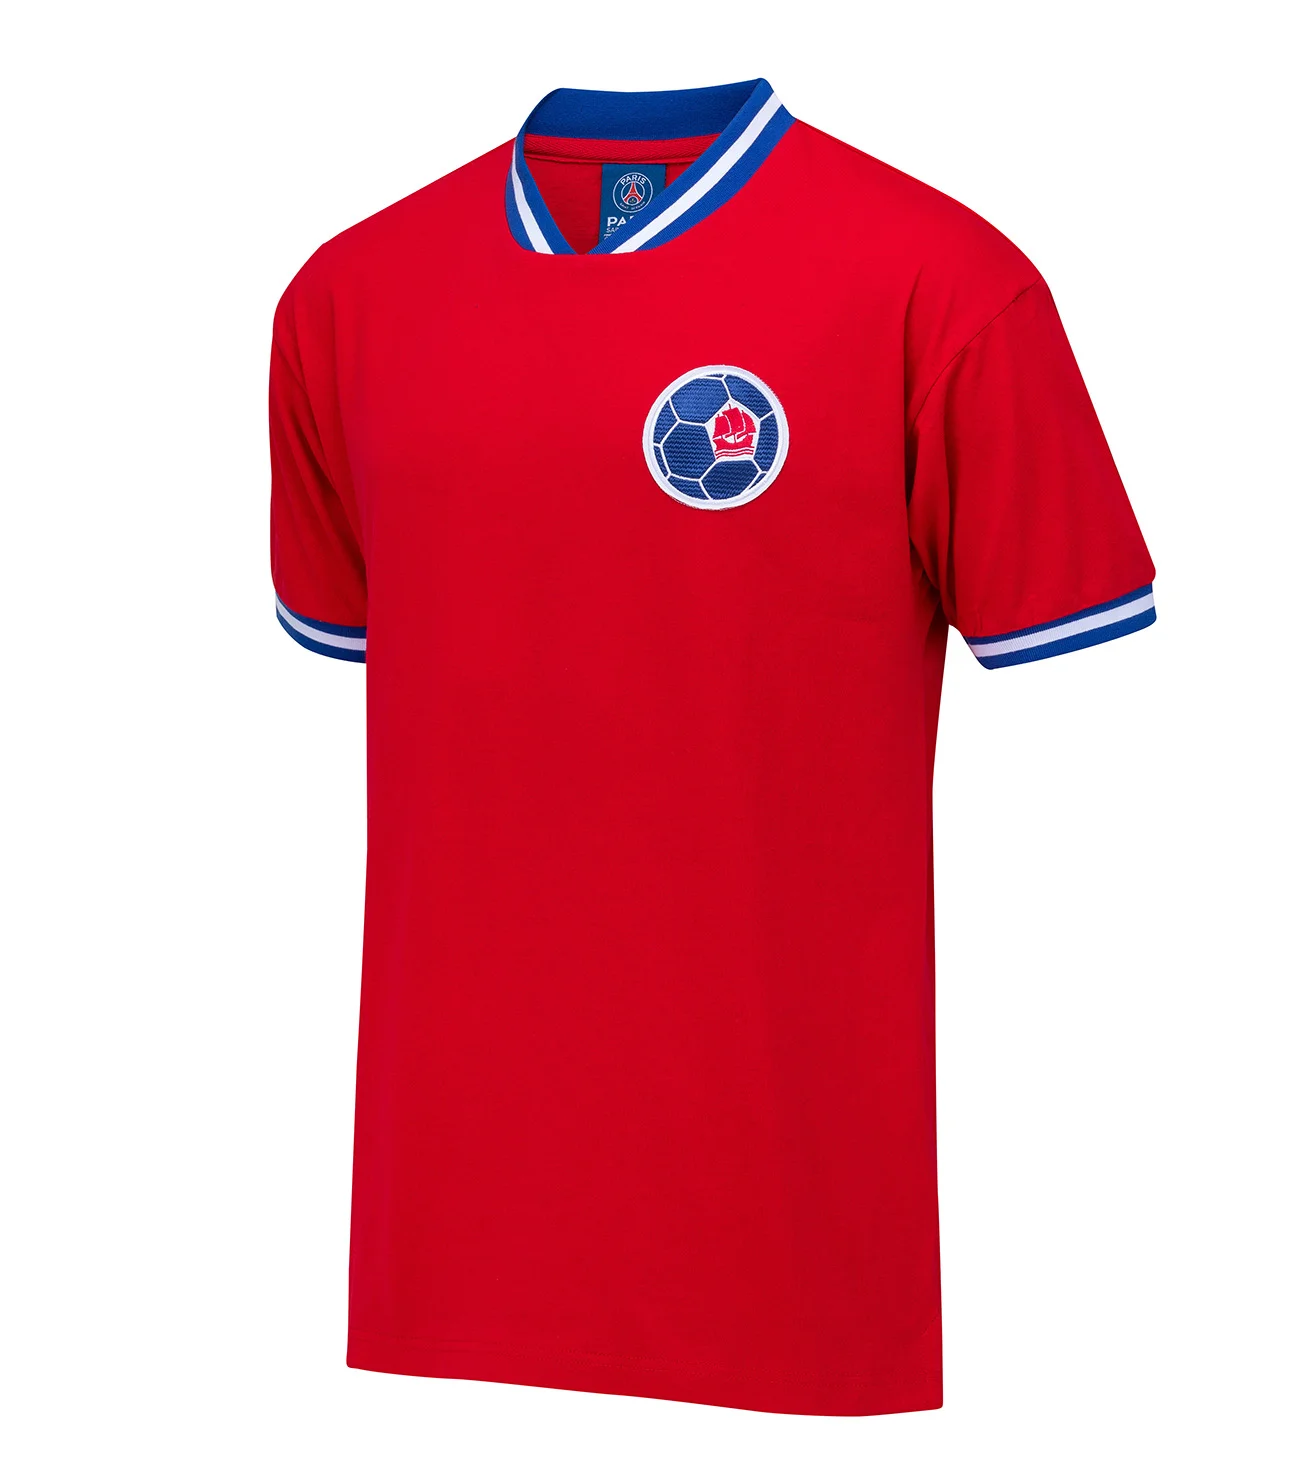 PSG - Réédition premier maillot de 1970